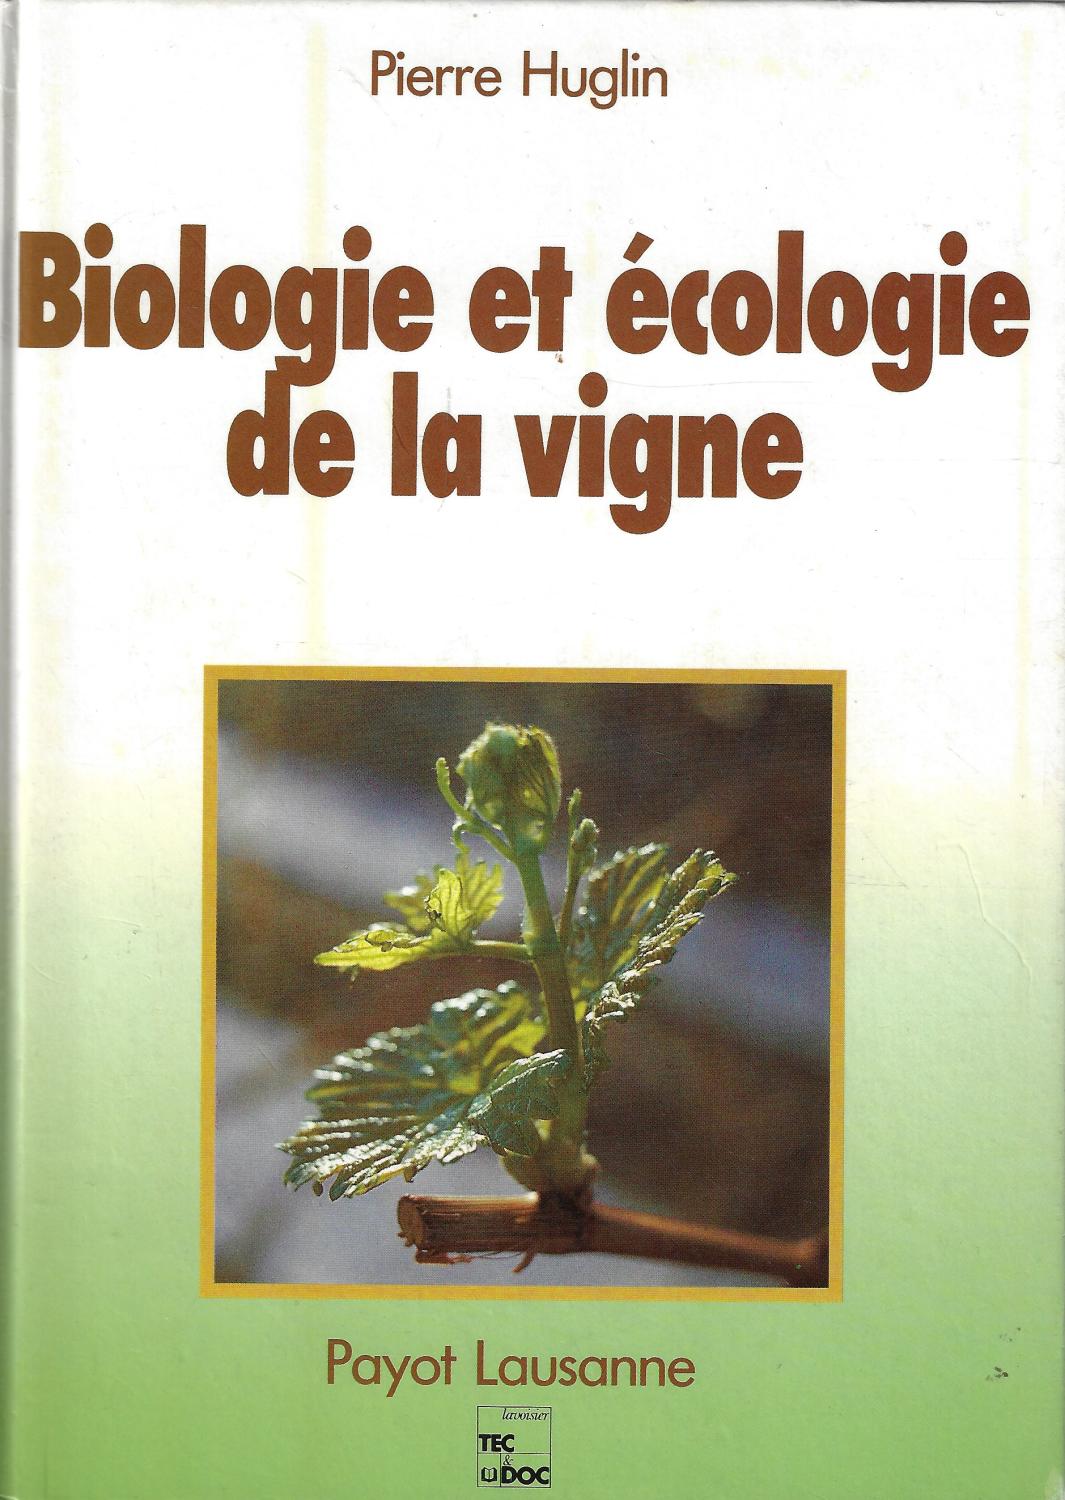 Biologie et ecologie de la vigne (French Edition) - Pierre Huglin